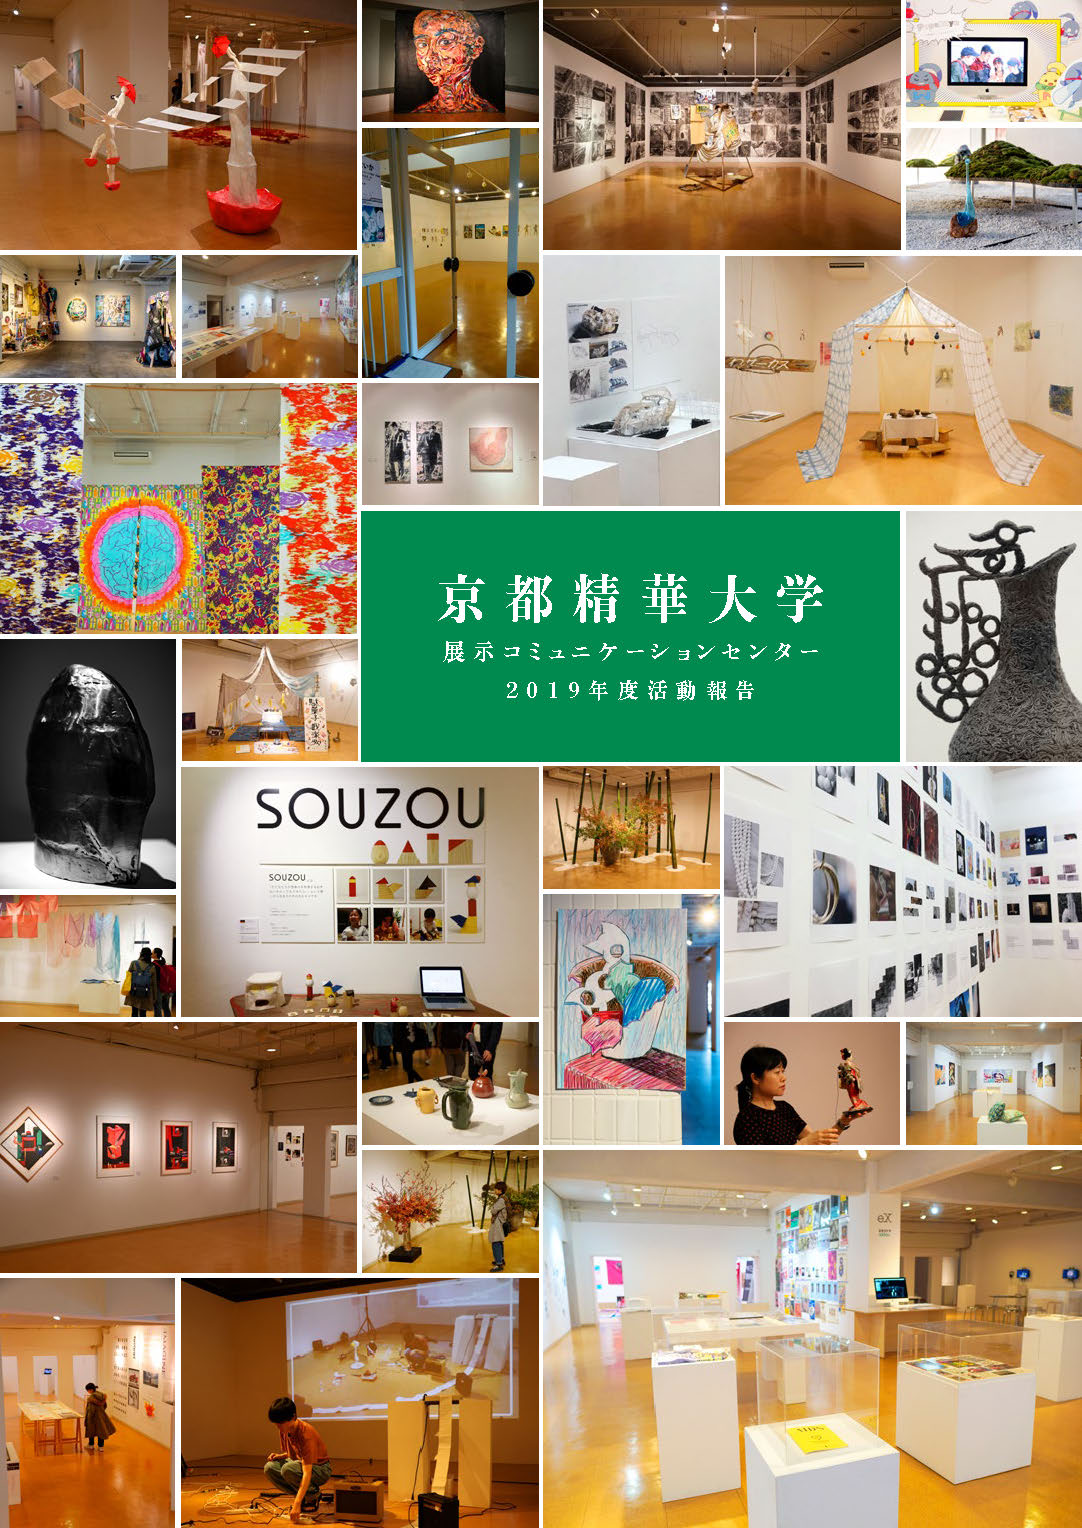 19年度ギャラリーフロール 展示コミュニケーションセンター の活動報告書が完成しました 京都精華大学